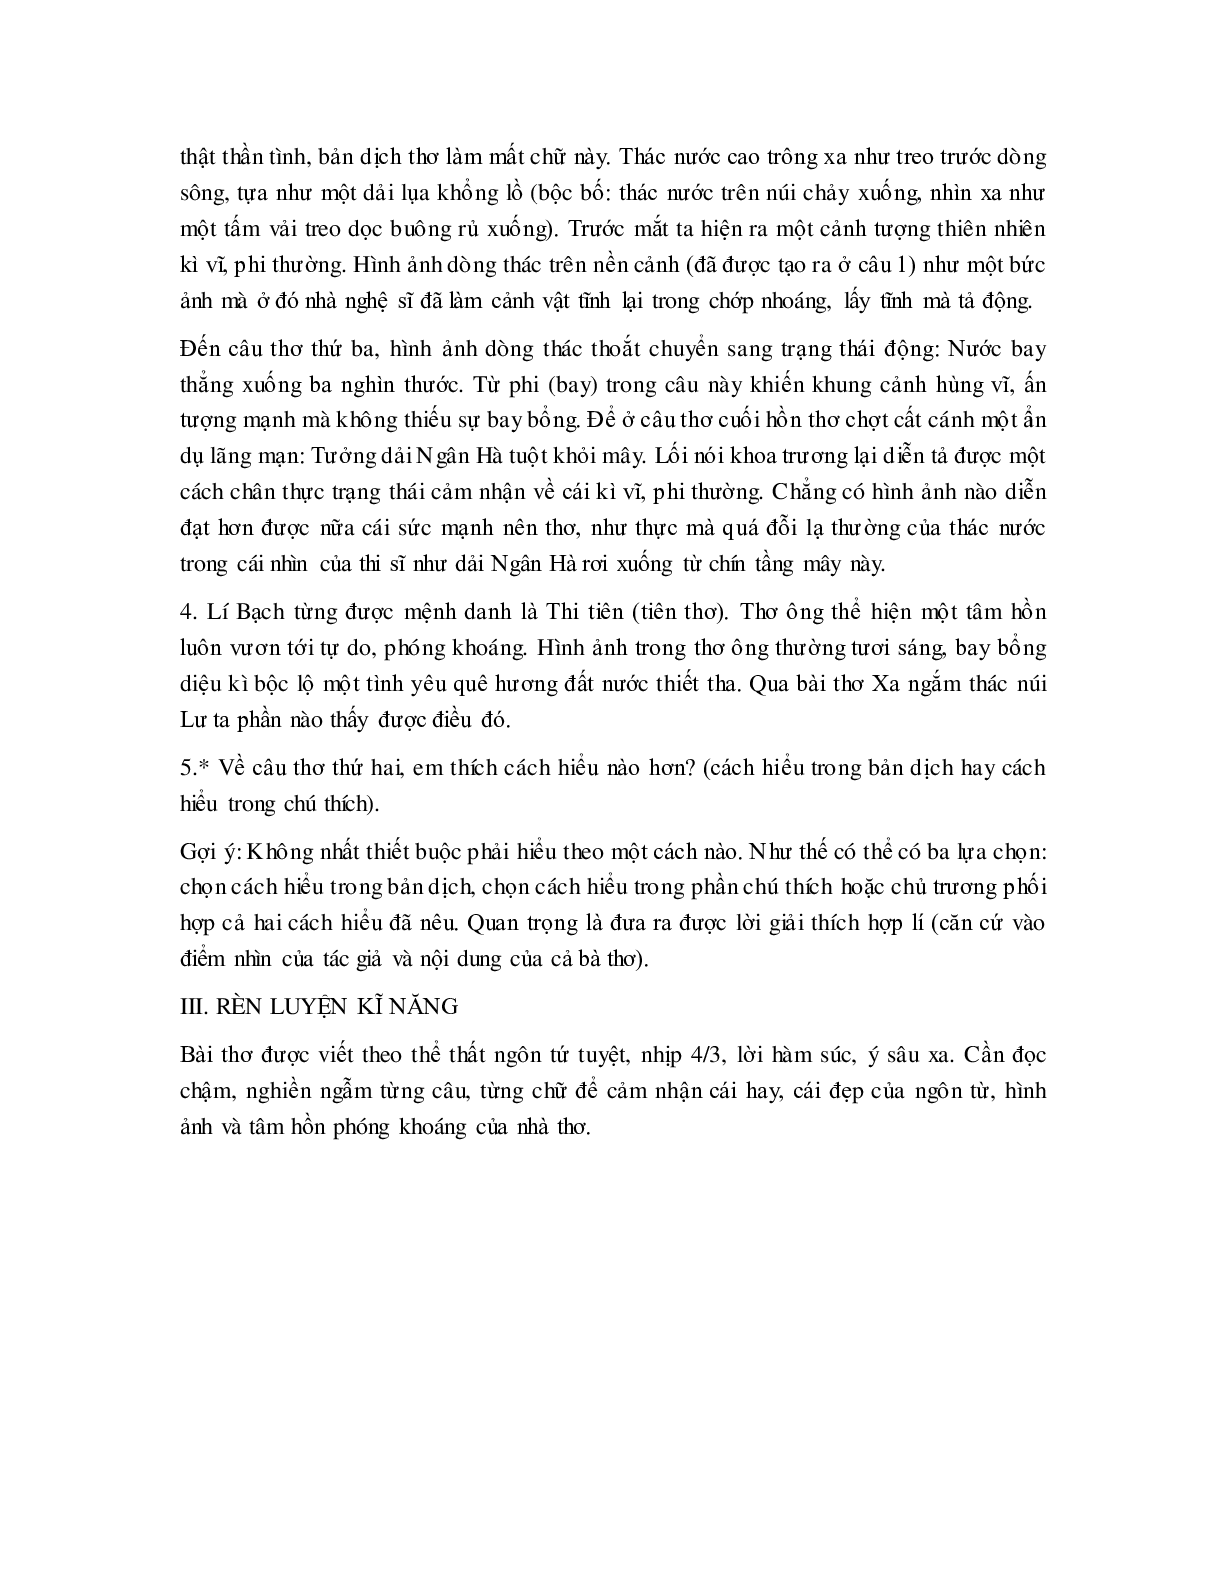 Soạn bài Xa ngắm thác núi Lư - ngắn nhất Soạn văn 7 (trang 2)